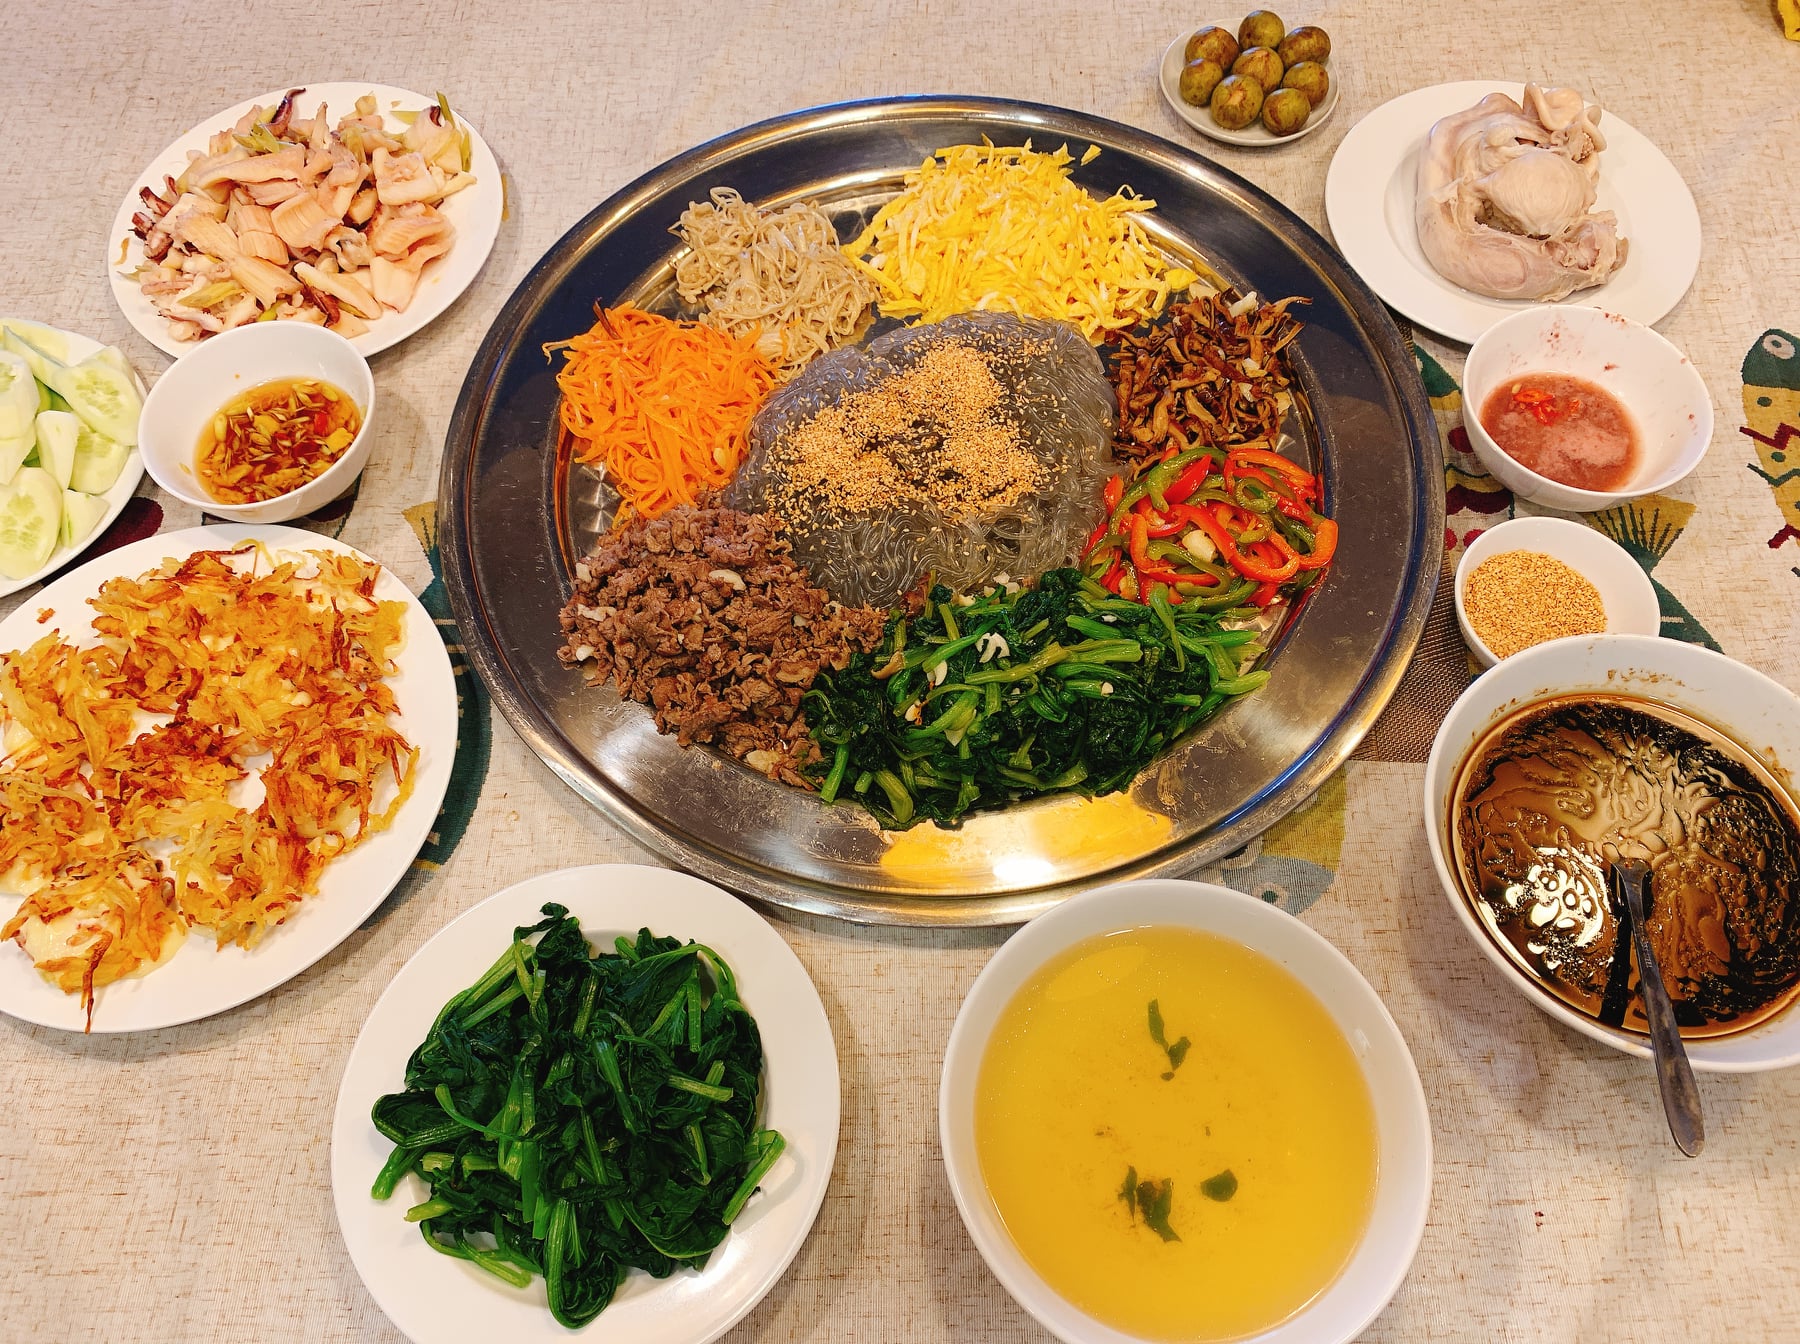 Mách bạn cách làm món miến trộn Hàn Quốc chuẩn vị tại nhà, đổi món cho gia đình ngày mưa lạnh - Ảnh 4.